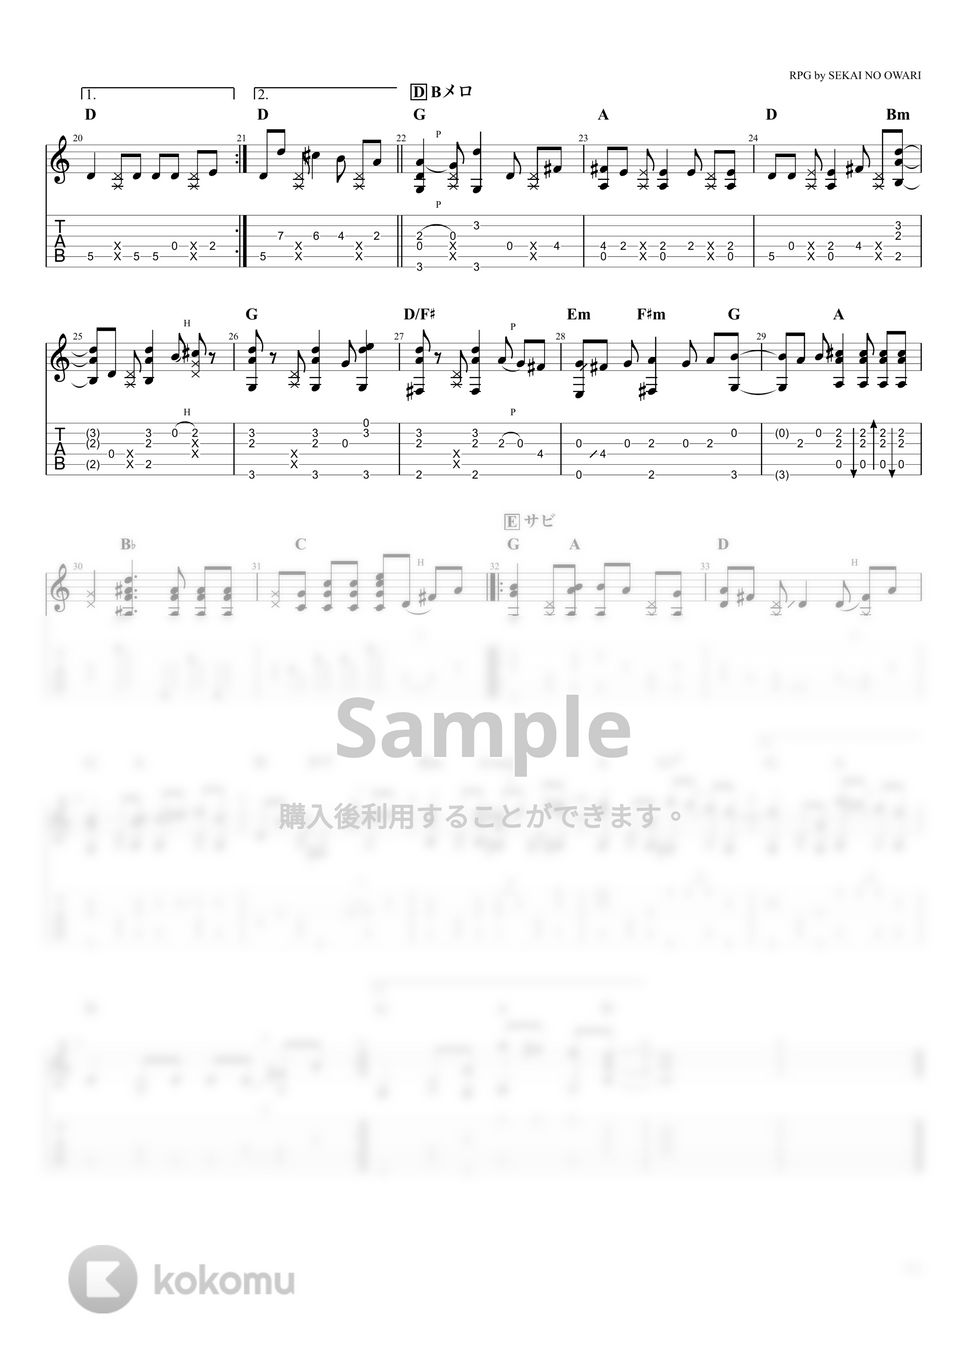 SEKAI NO OWARI - RPG (ソロギター) by たまごどり